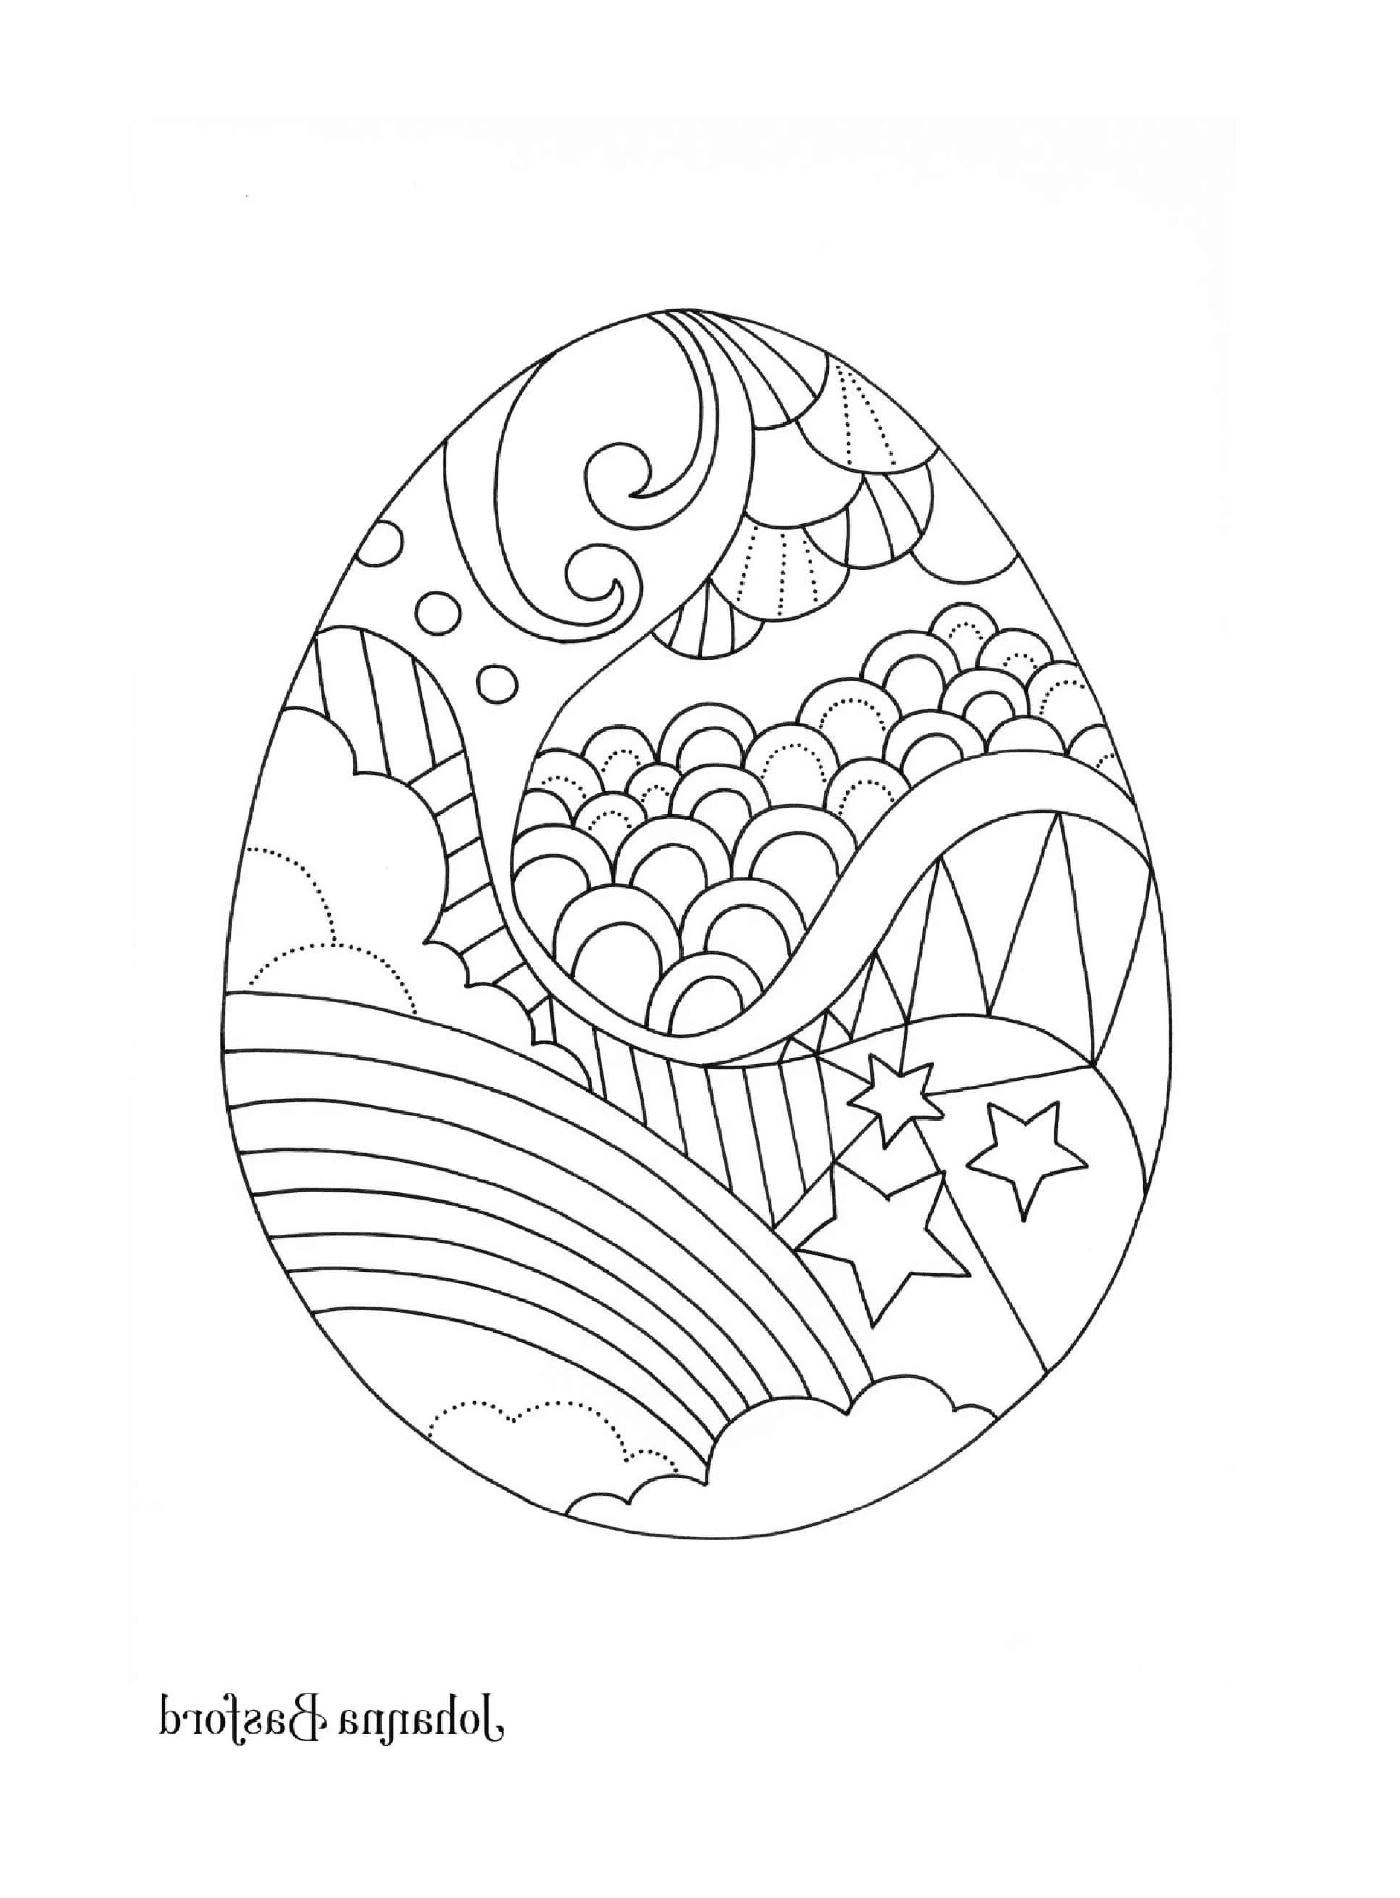  Пасхальное яйцо, украшенное радугой, облаками, звездами и другими узорами 